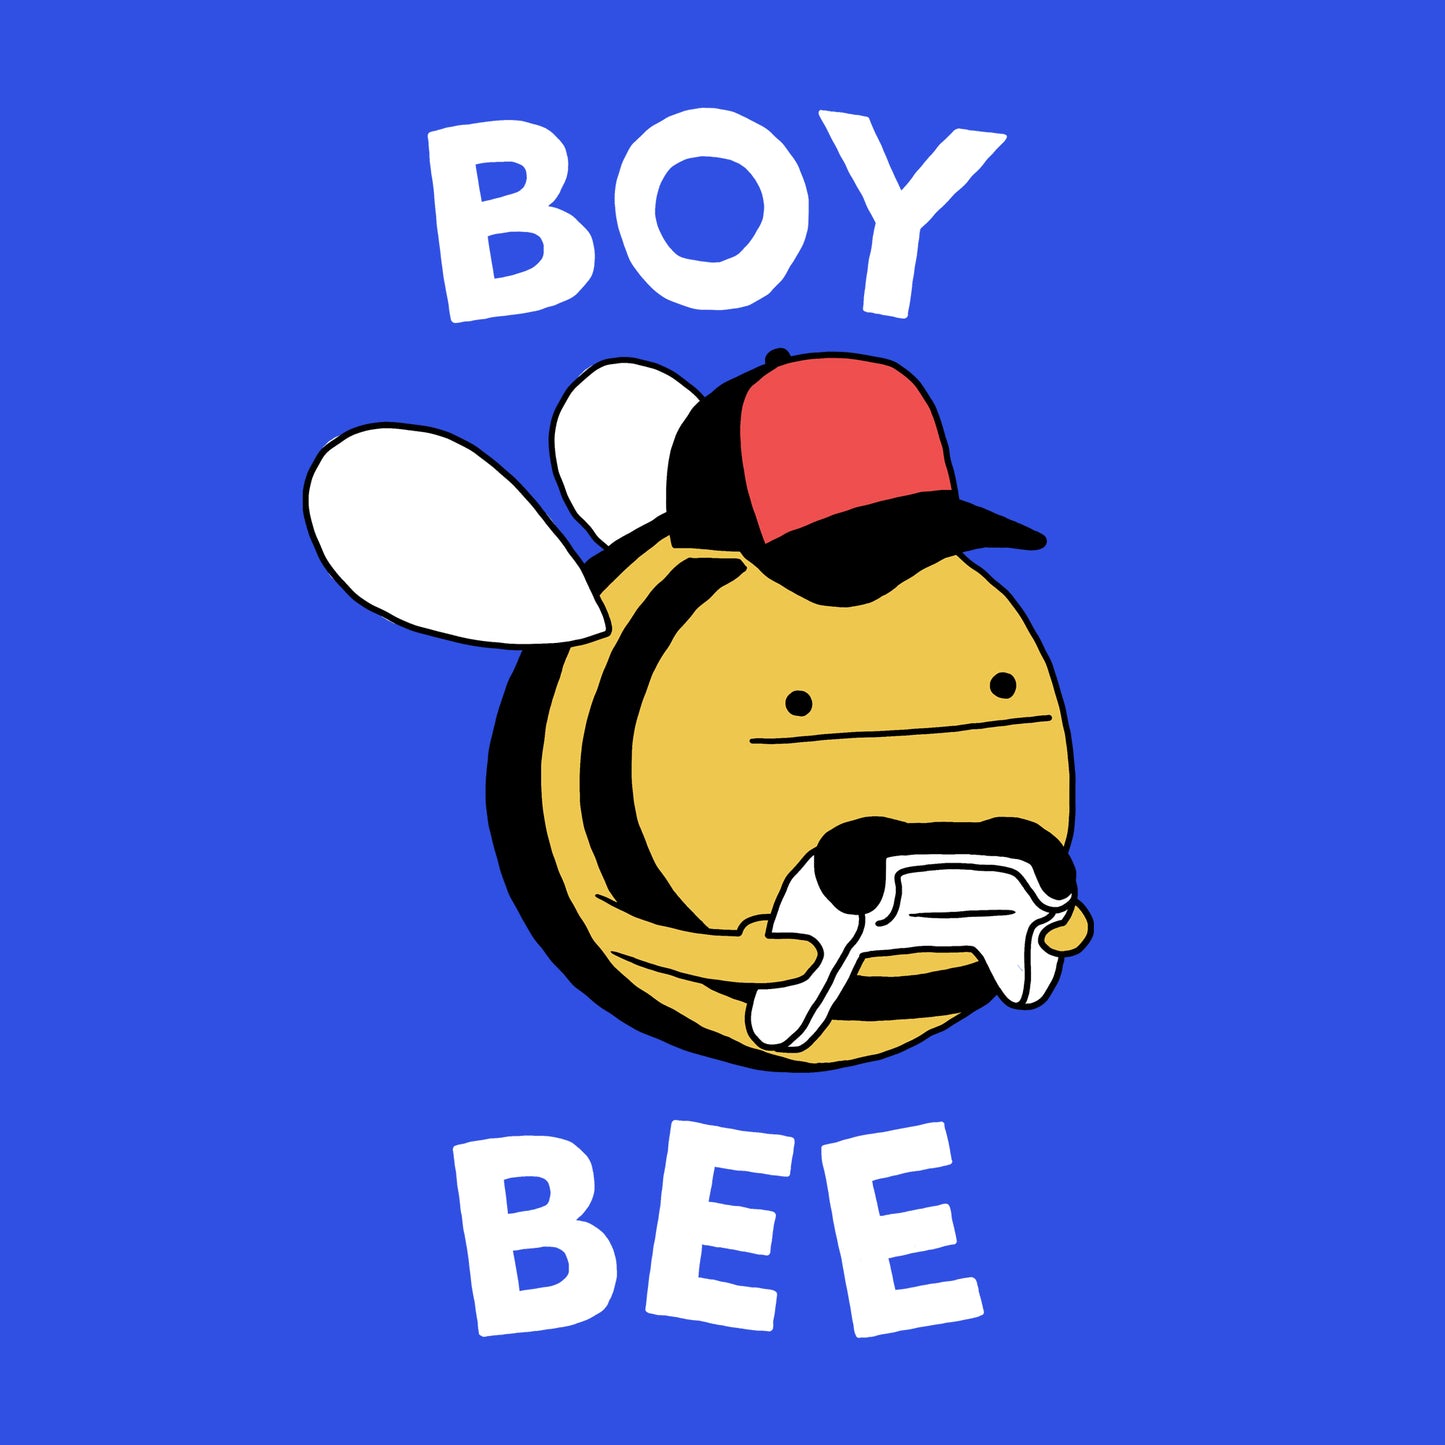 BOY BEE